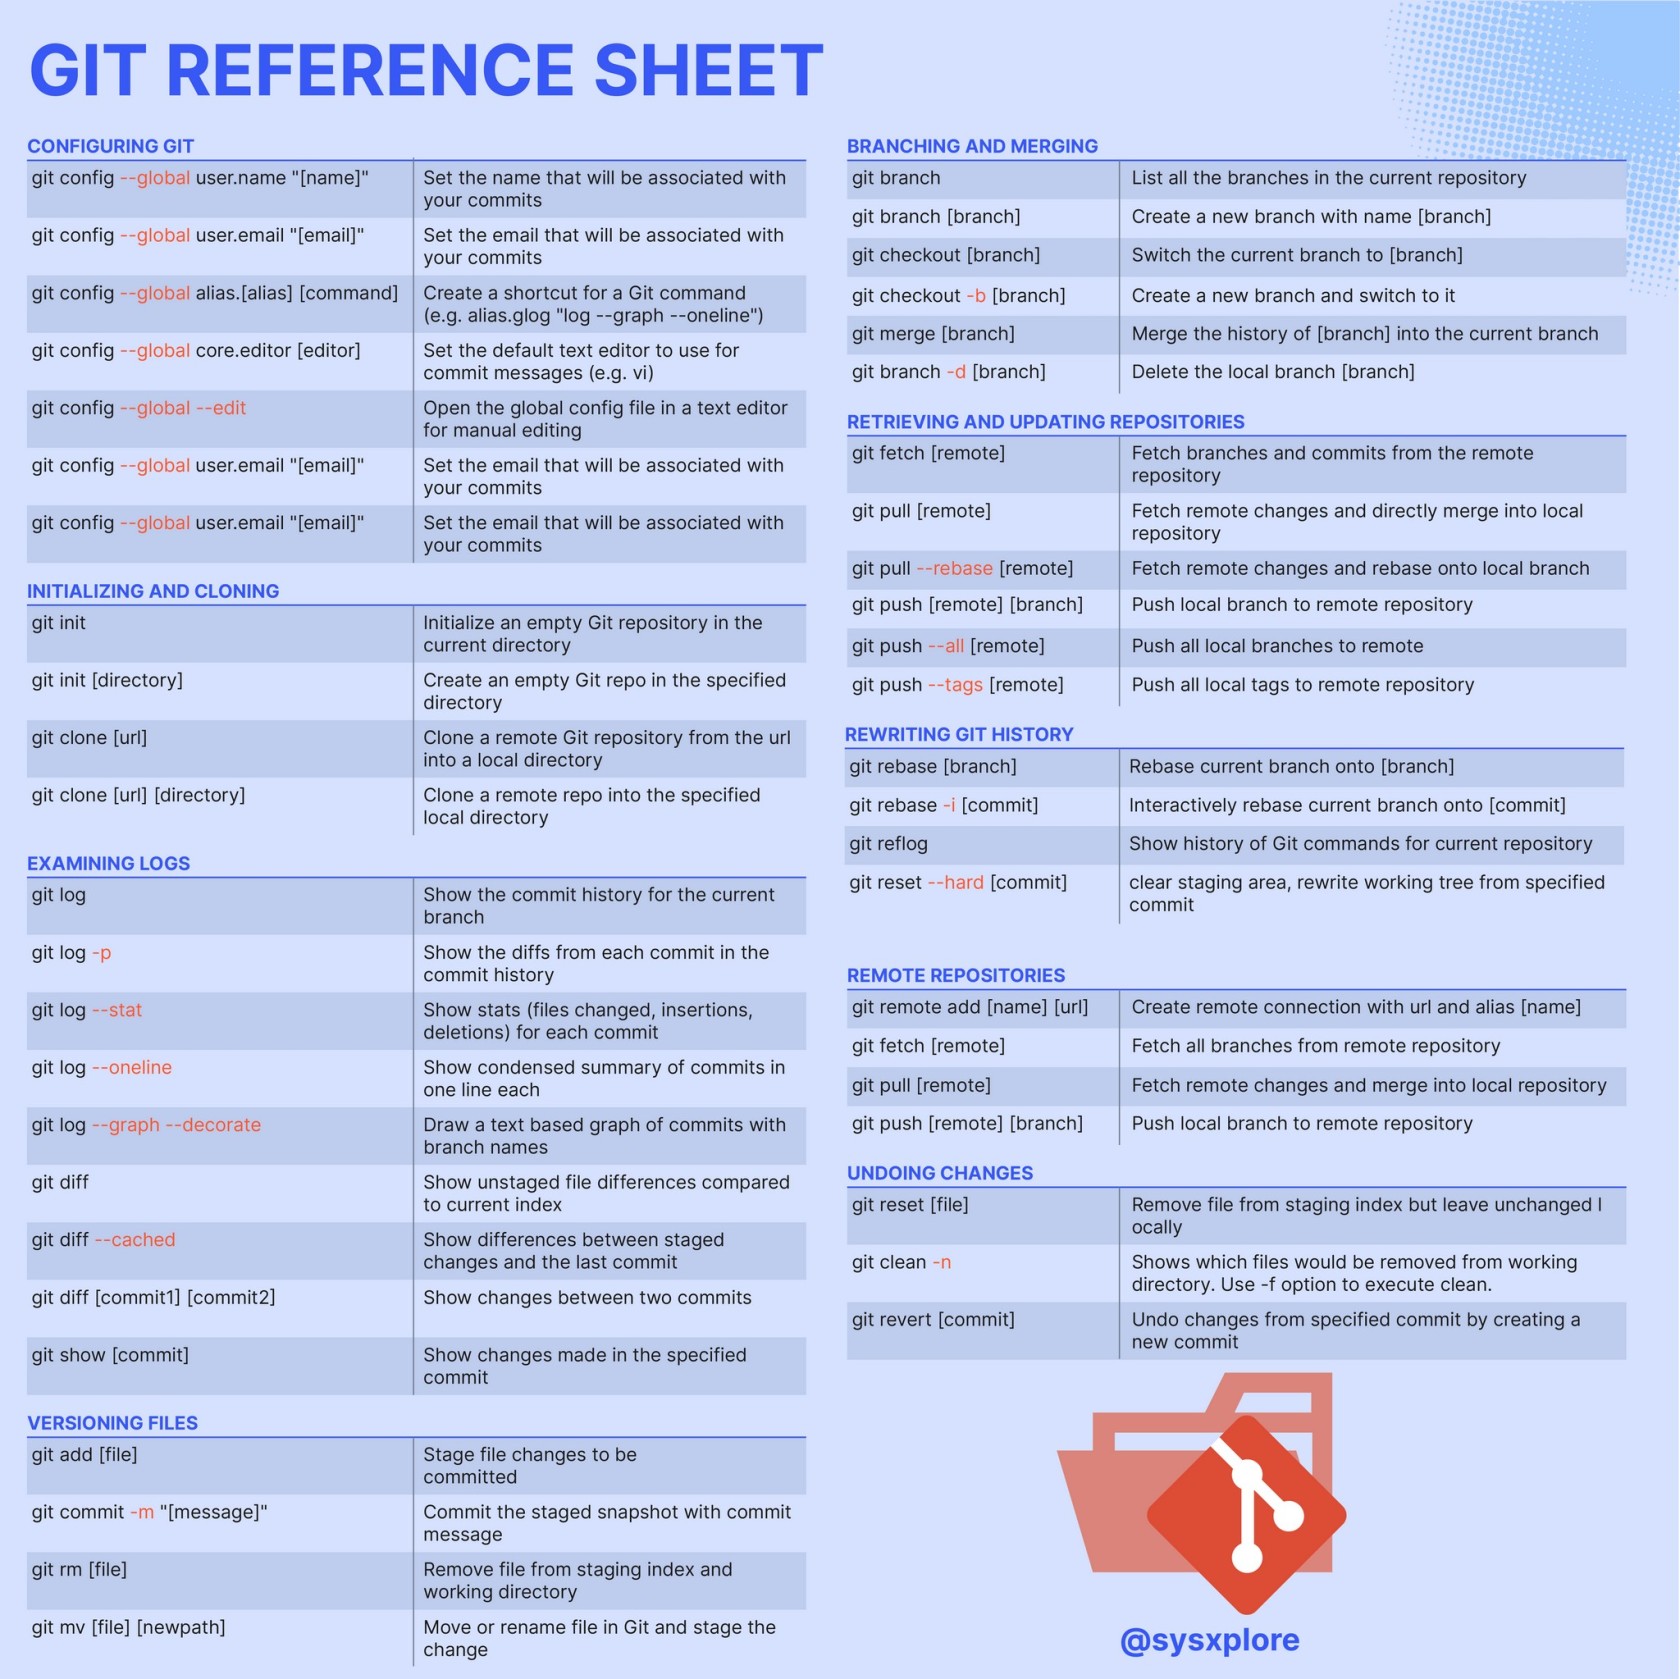 git_reference_sheet.jpg